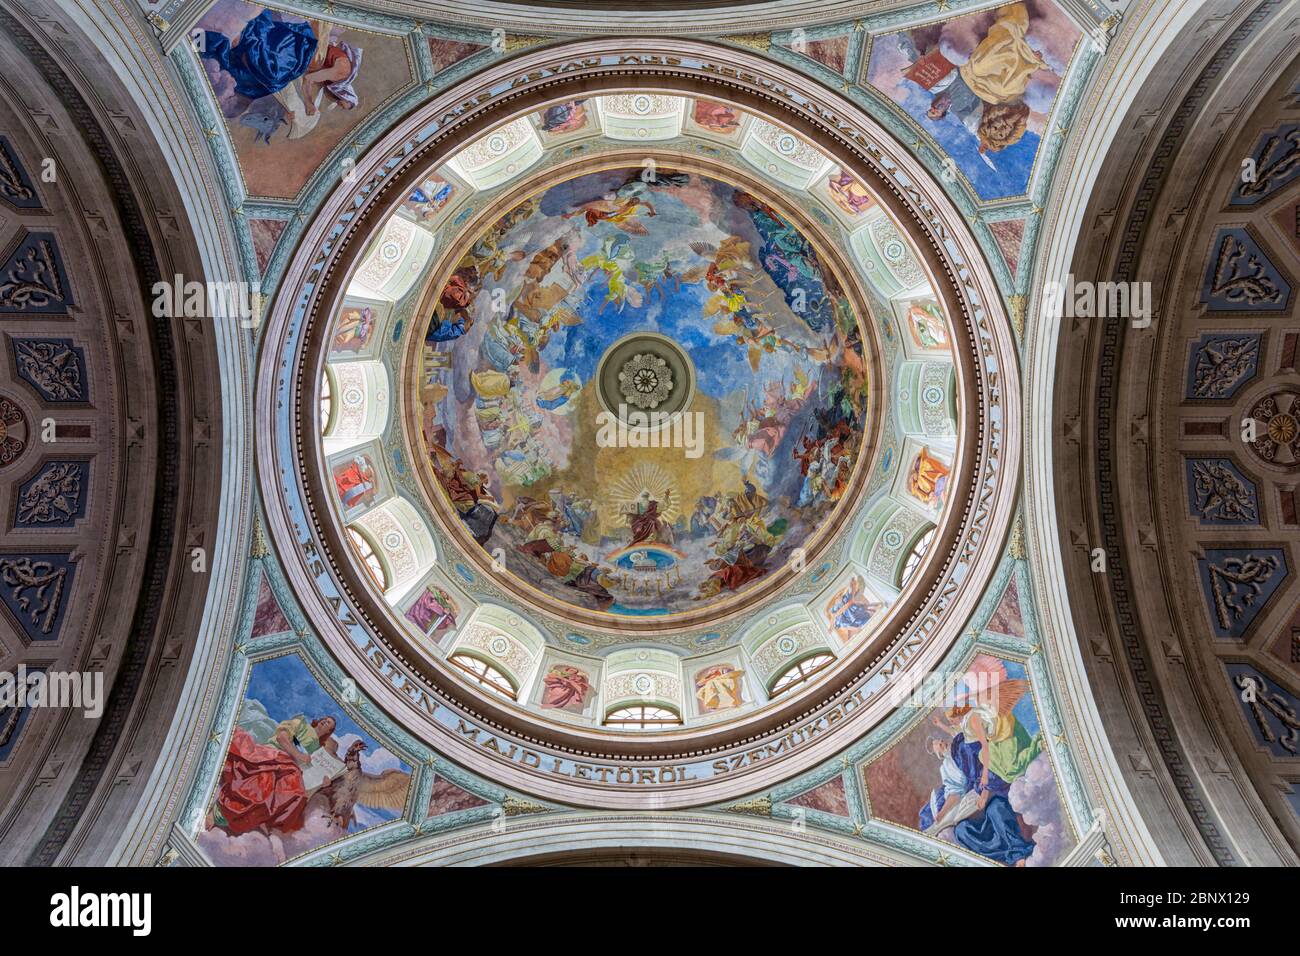 Plafond Cathédrale Basilique également appelé Eger Cathédrale à Eger, Hongrie Banque D'Images